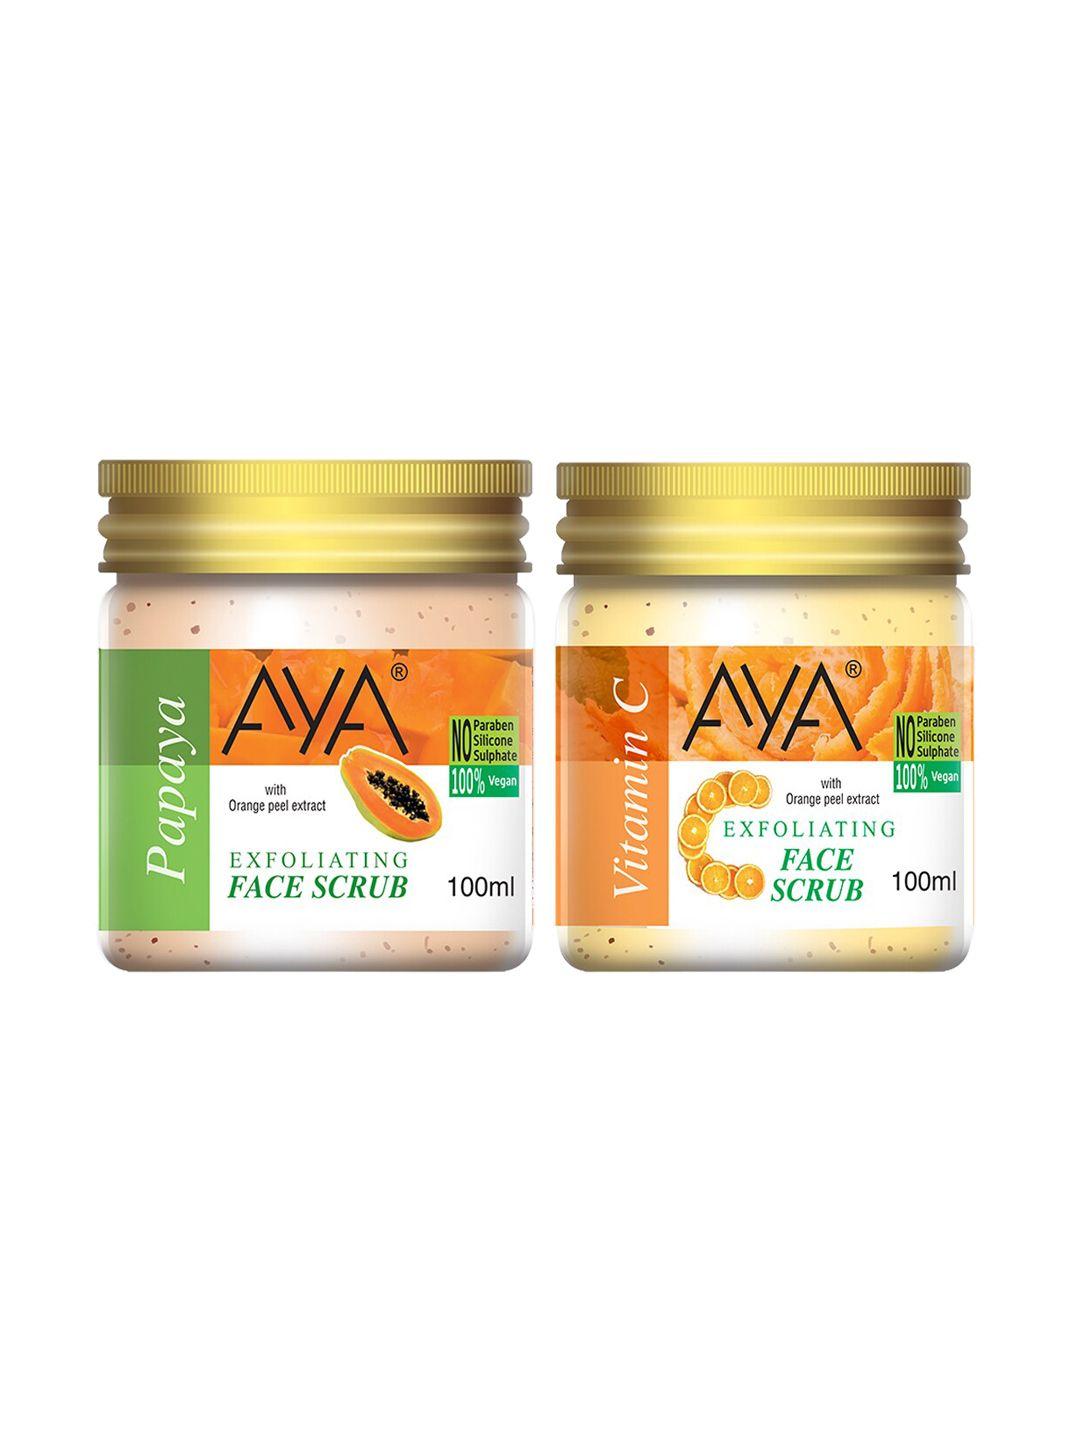 aya set of papaya & vitamin c exfoliating face scrubs - 100 ml each